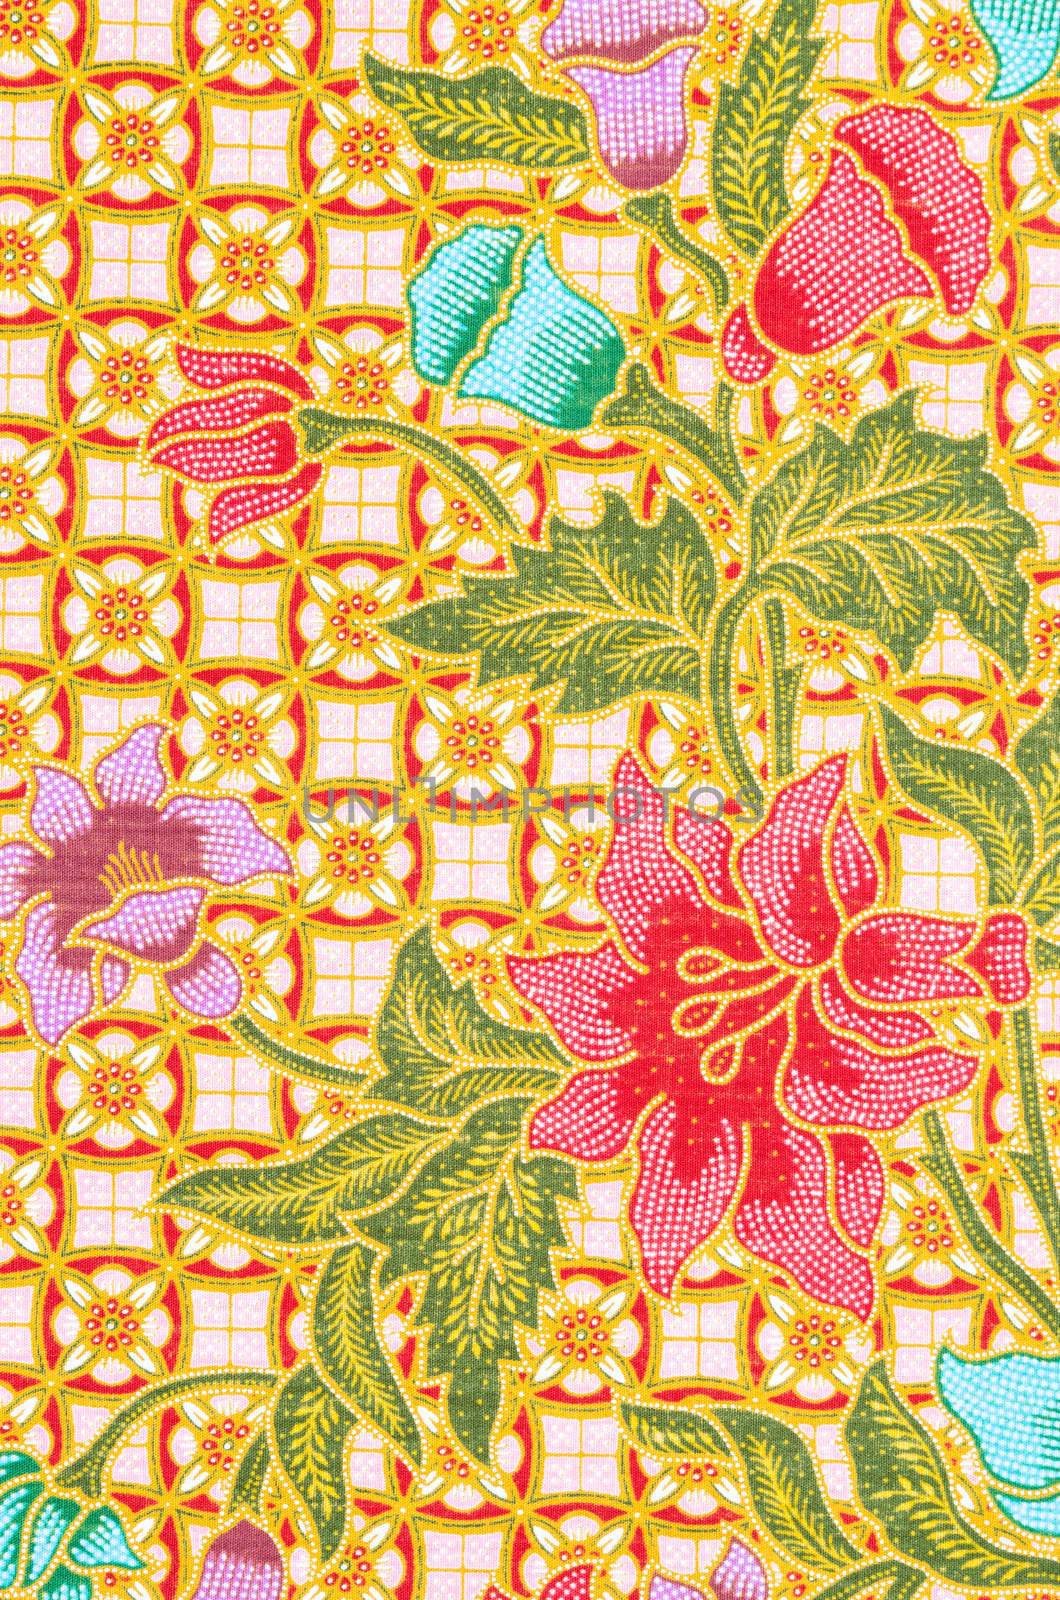 The beautiful of art Batik Pattern by Gamjai